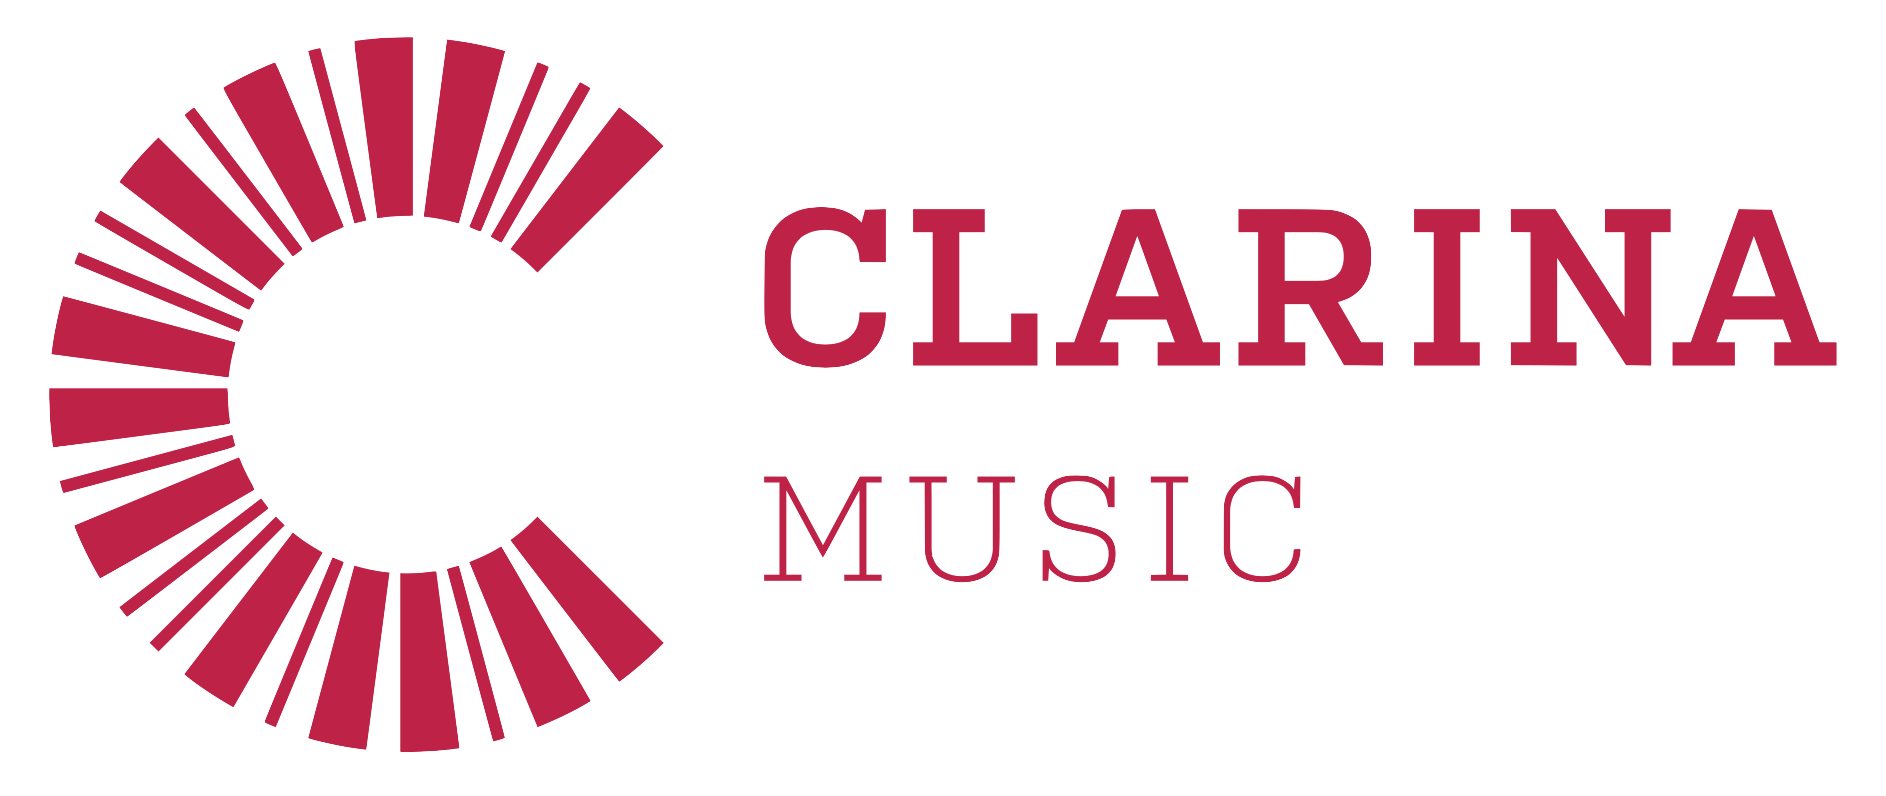 Hudobné nástroje Clarina Music